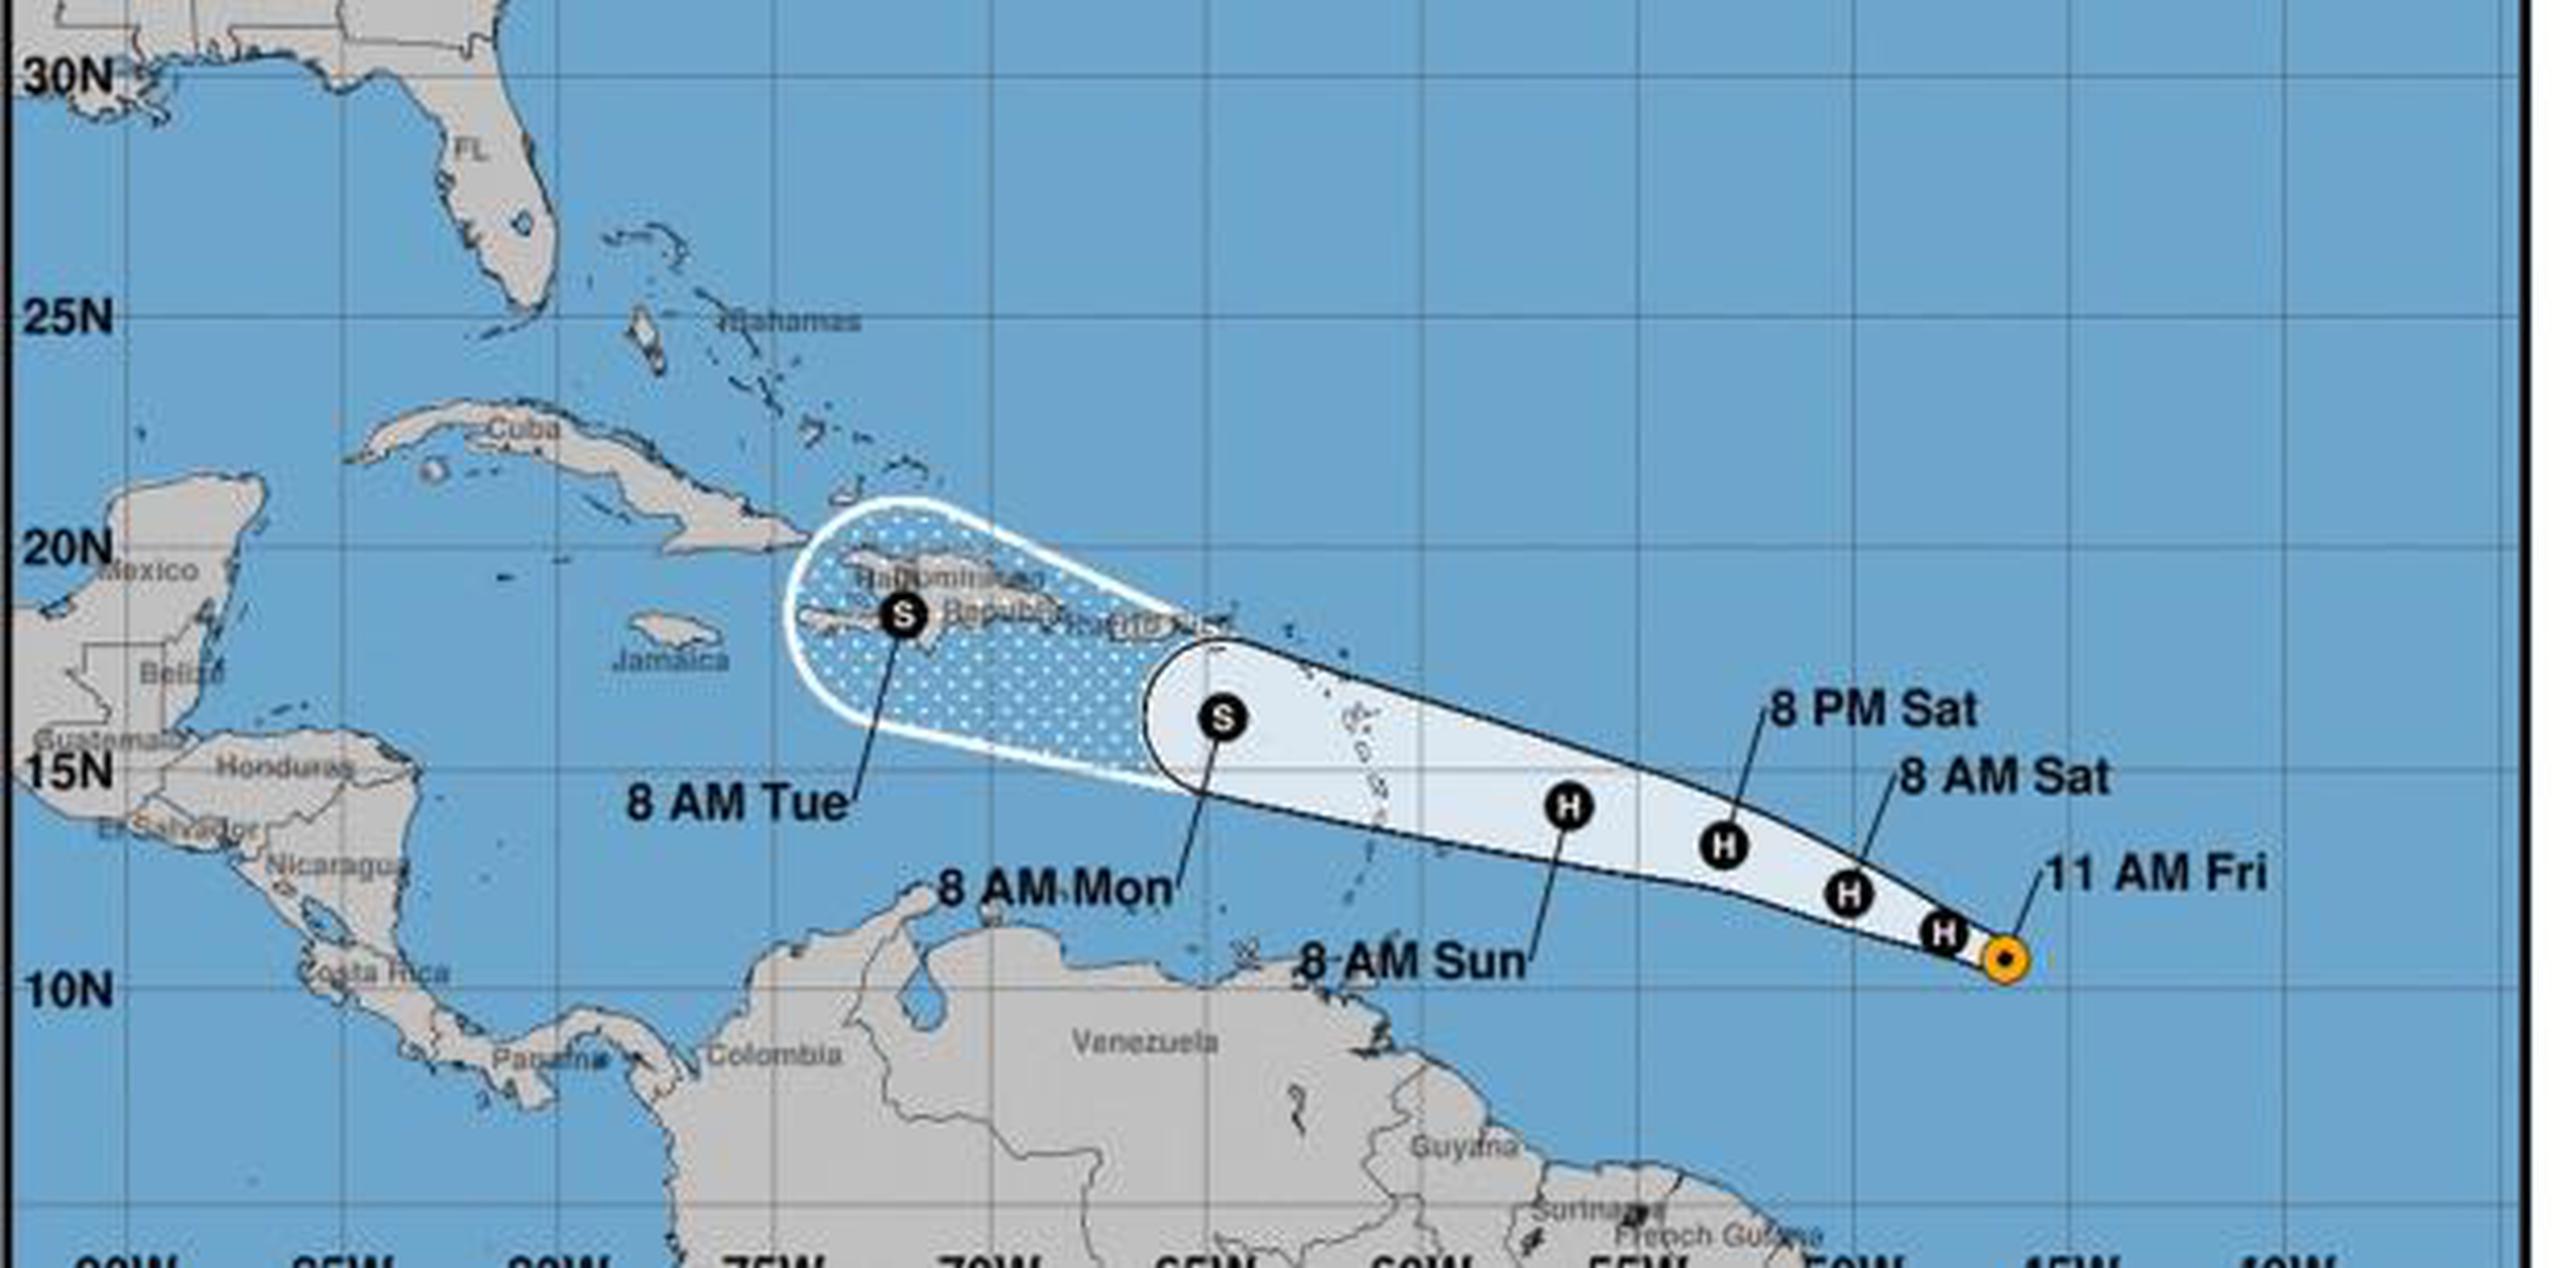 El Servicio Nacional de Meteorología ubica al fenómeno pasando a unas 80 millas al sur de Ponce. (Archico)